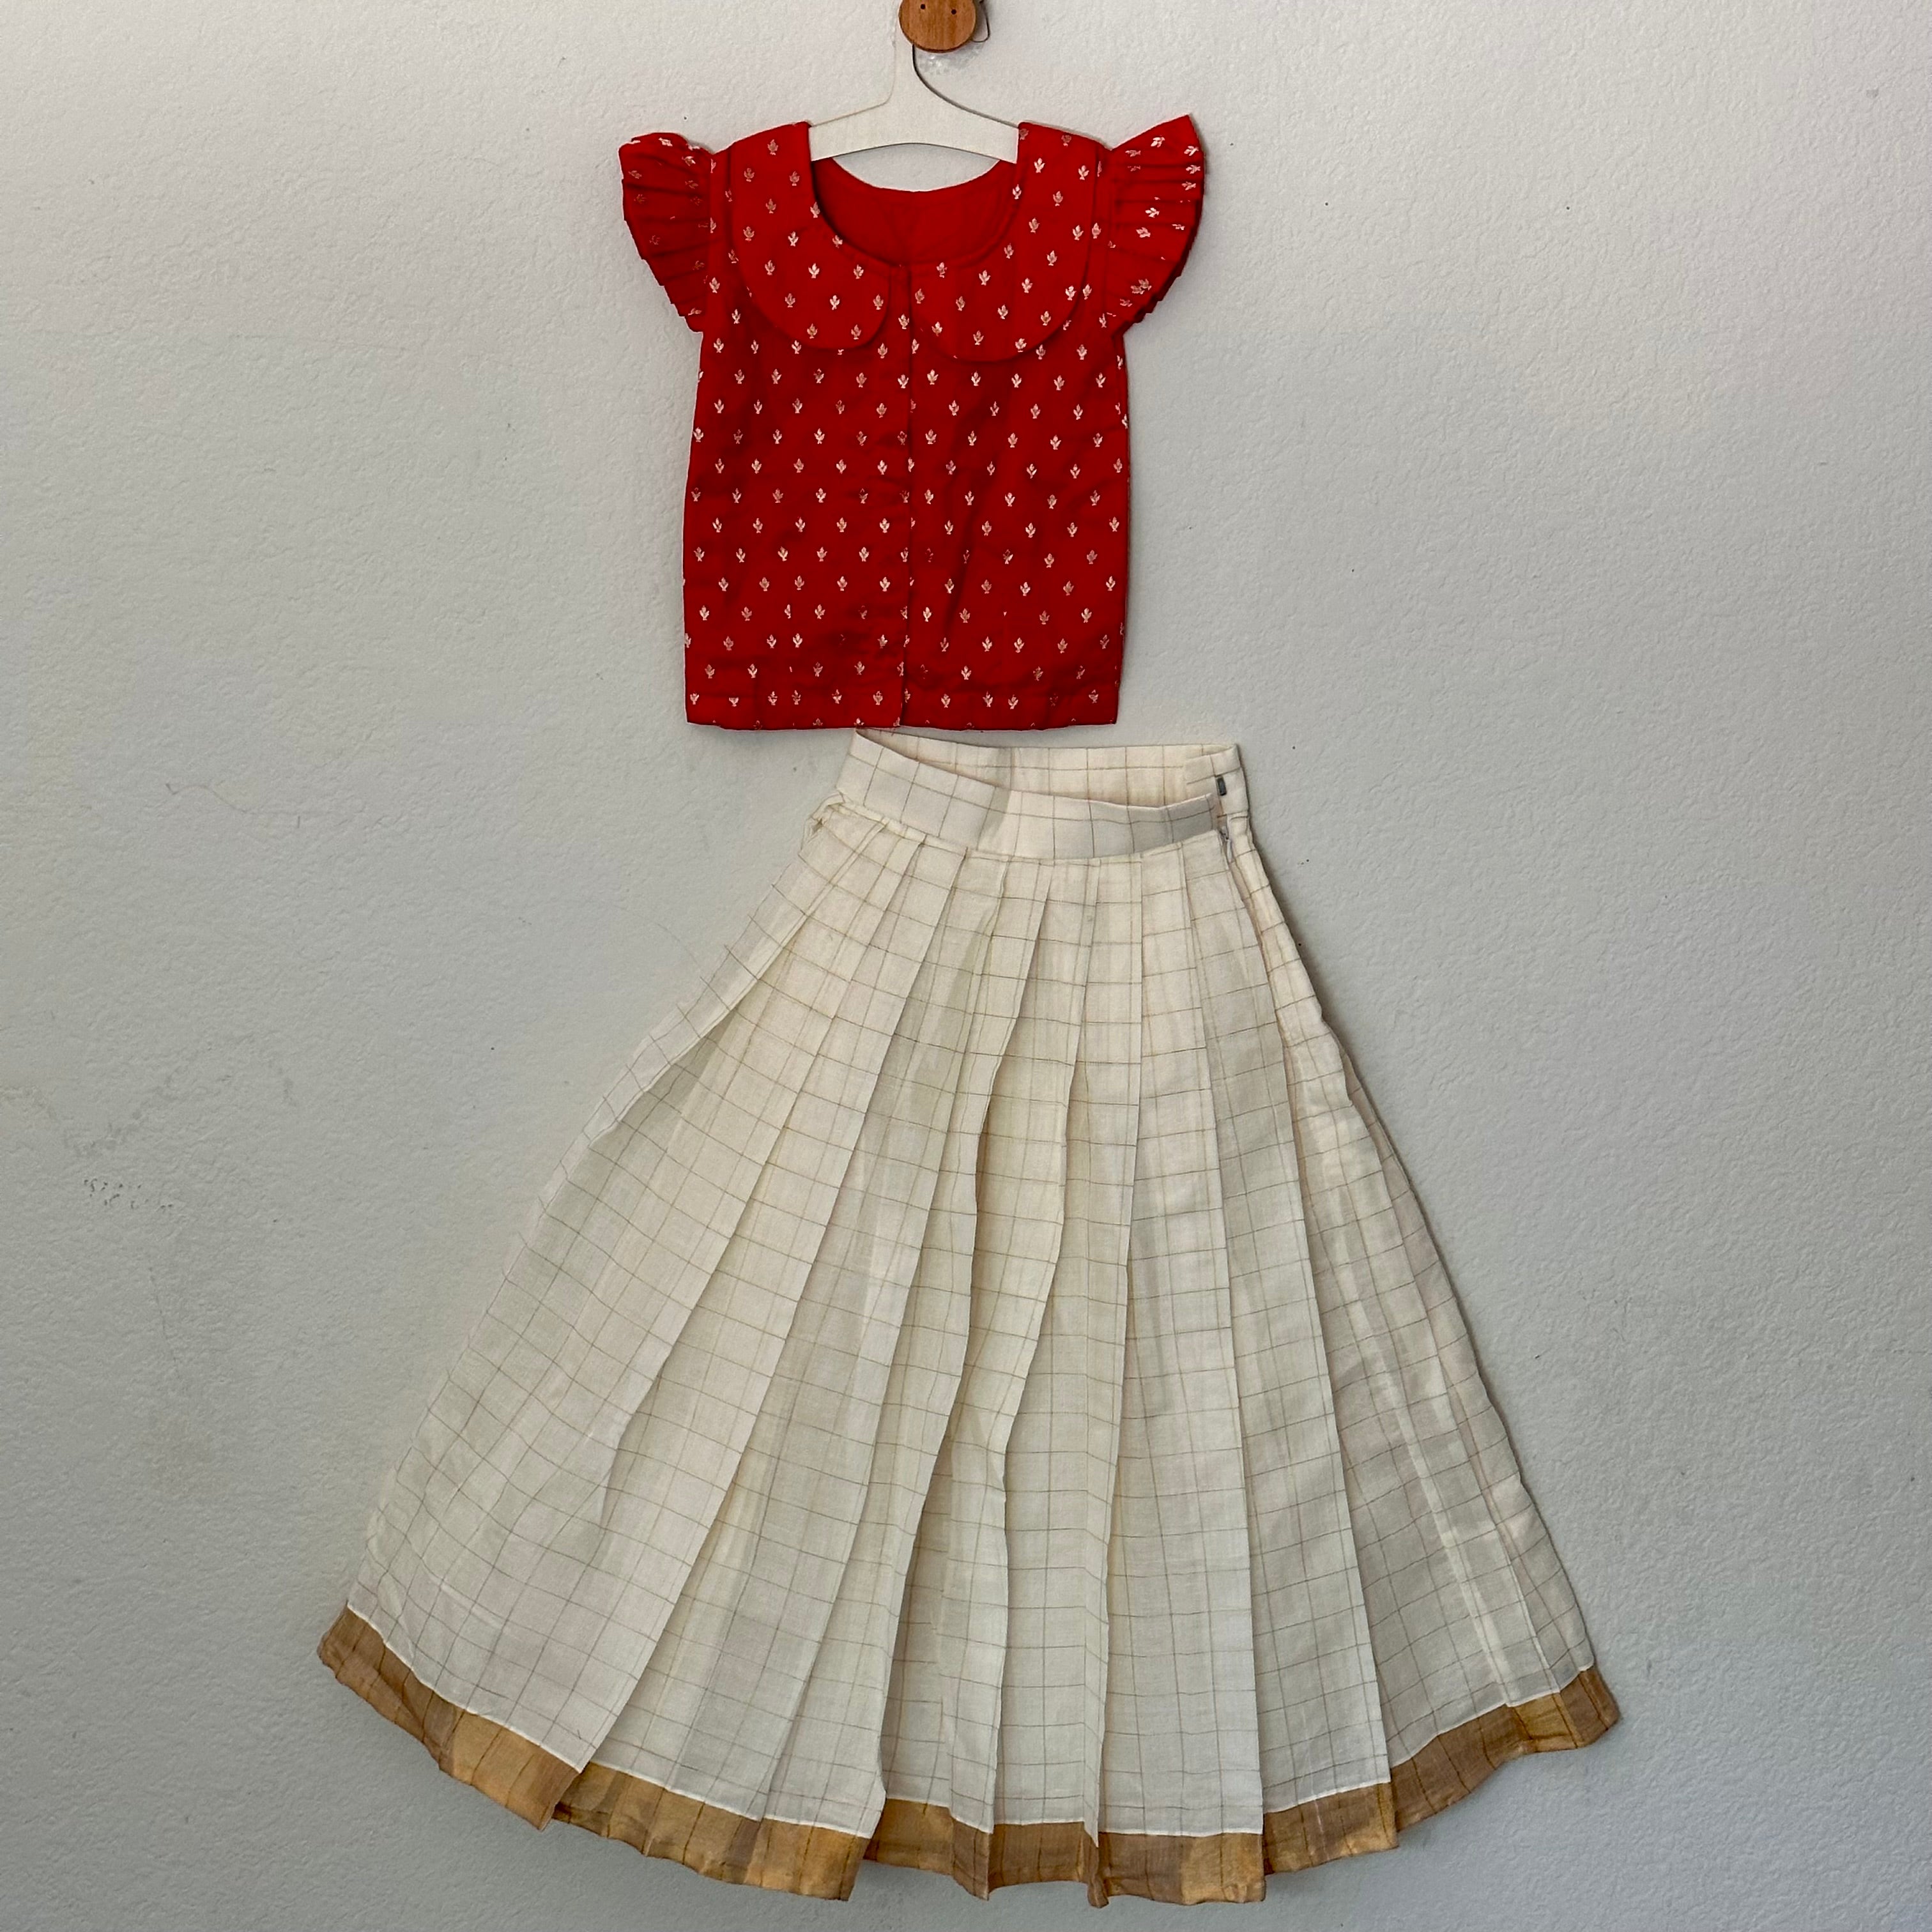 21 Lehenga Skirt & Types of Lehenga - Up your Style Quotient | Pink bridal  lehenga, Lehenga skirt, Types of skirts